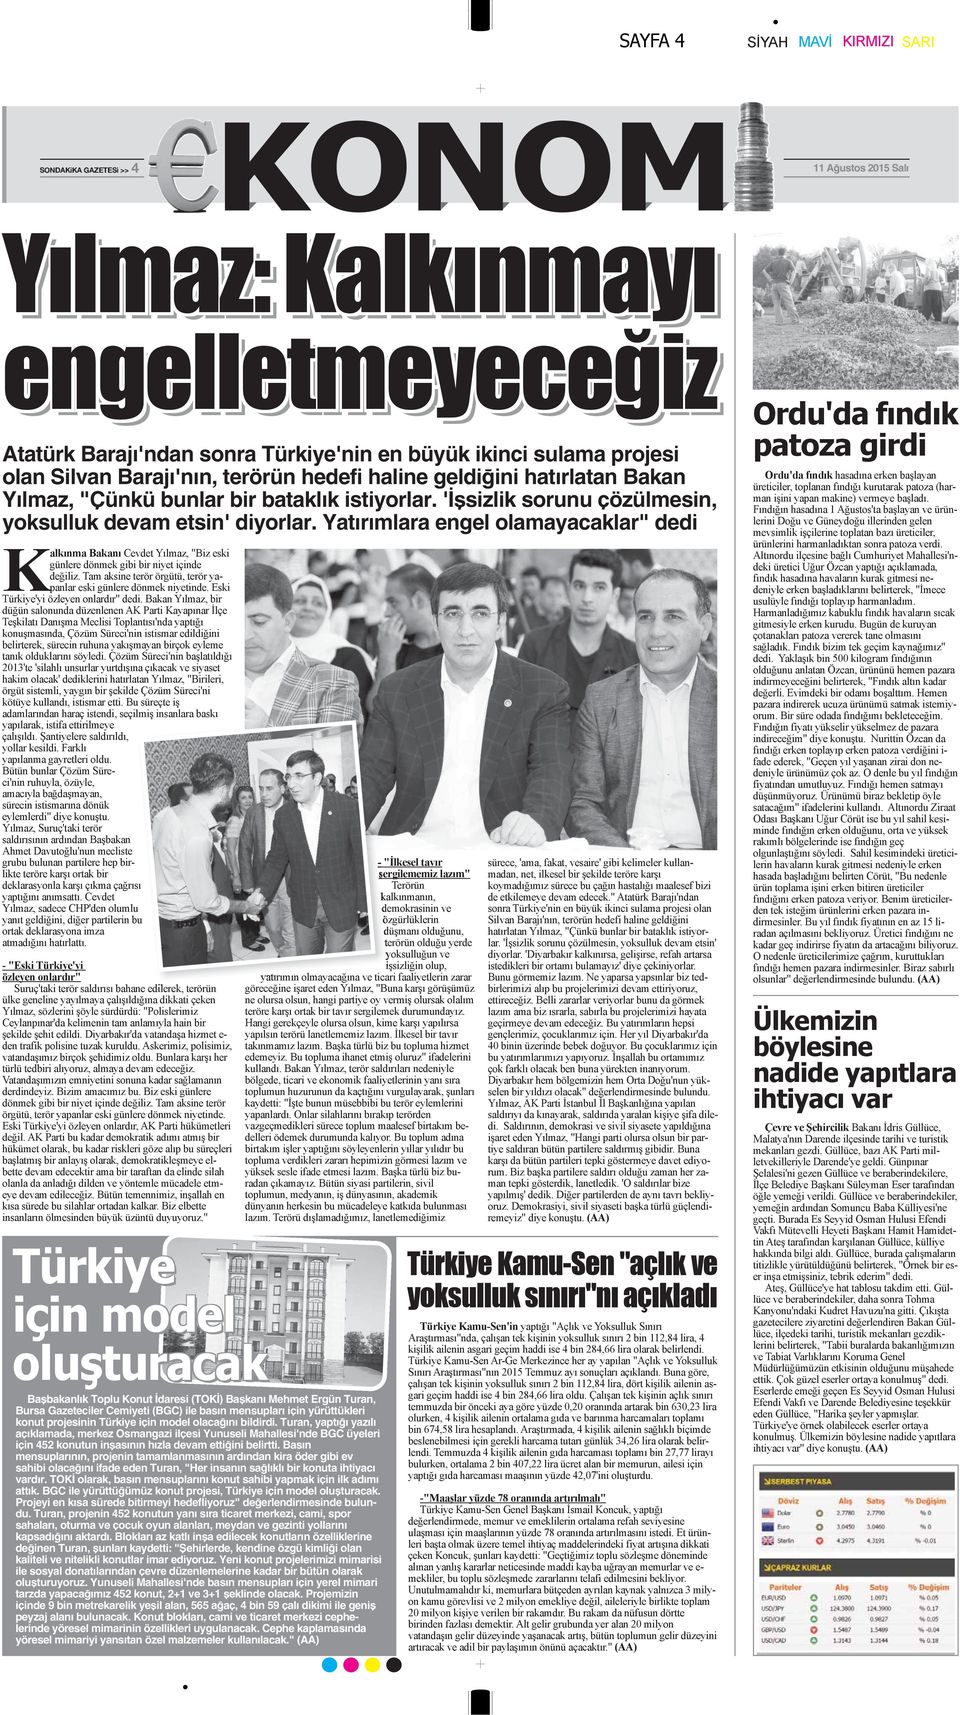 Yatırımlara engel olamayacaklar" dedi Başbakanlık Toplu Konut İdaresi (TOKİ) Başkanı Mehmet Ergün Turan, Bursa Gazeteciler Cemiyeti (BGC) ile basın mensupları için yürüttükleri konut projesinin